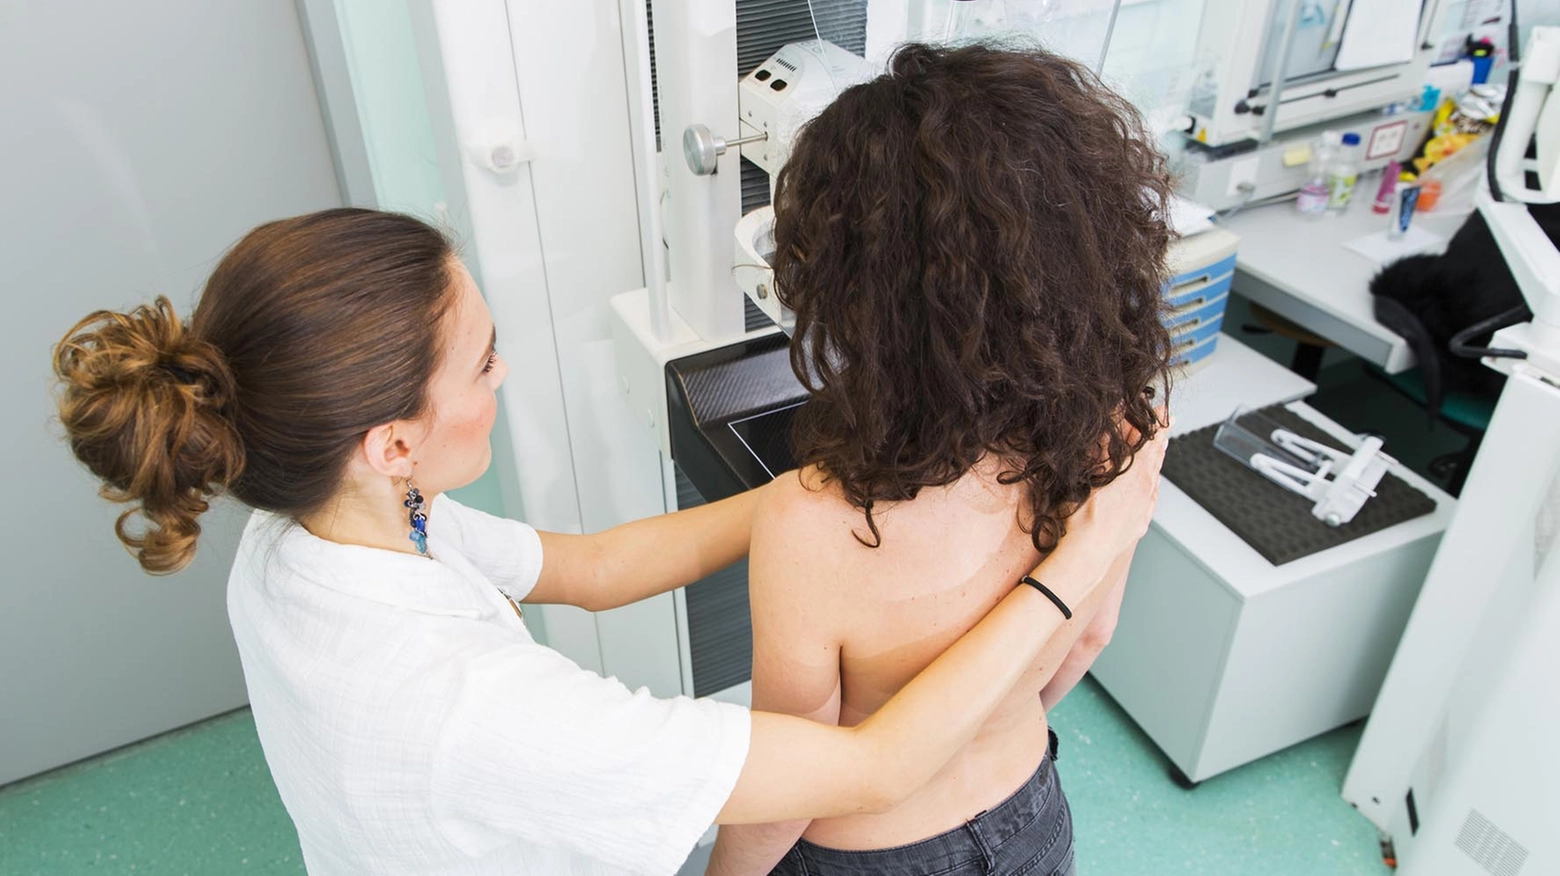 Una mammografia. Molti gli esami e gli screening persi a causa del coronavirus (Radaelli)